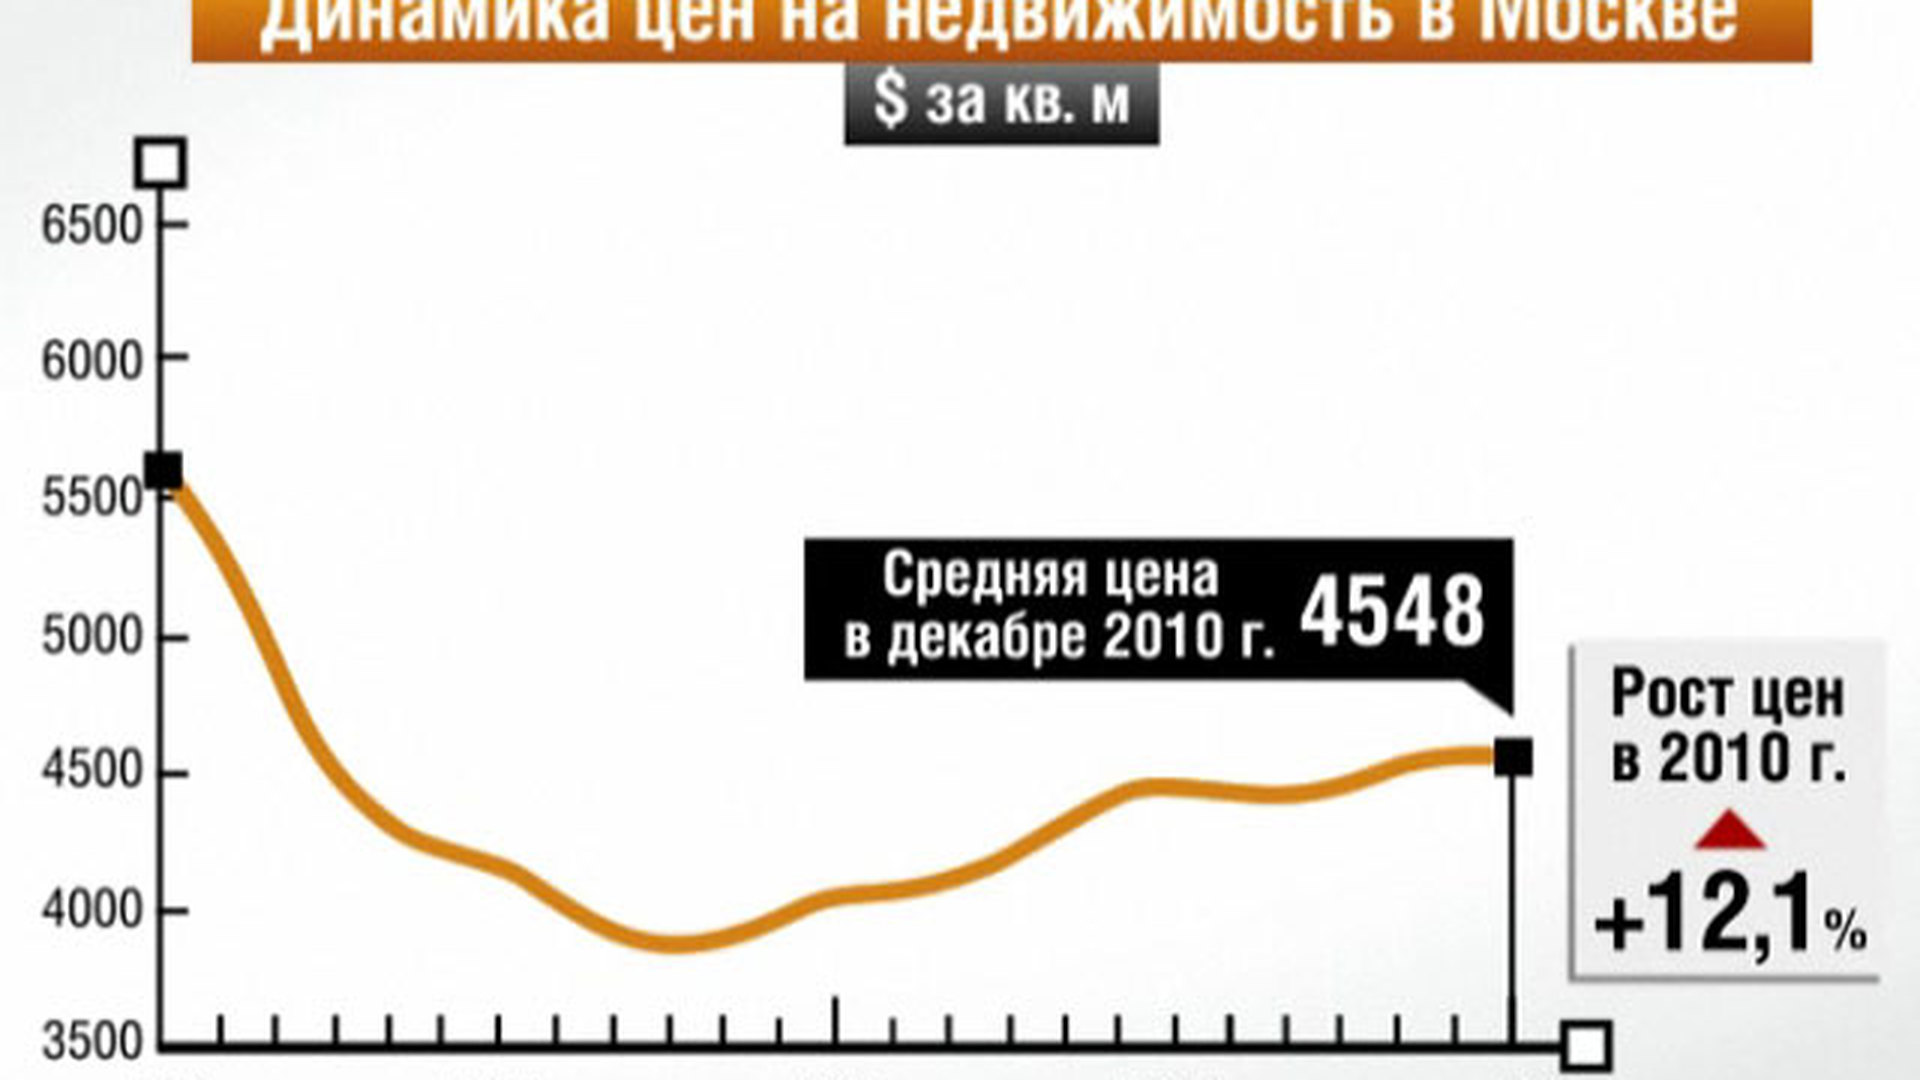 Цена недвижимости за 20 лет. Динамика стоимости недвижимости. Динамика цен на недвижимость в Москве за 20 лет. График стоимости недвижимости в Москве. Динамика роста цен на недвижимость.